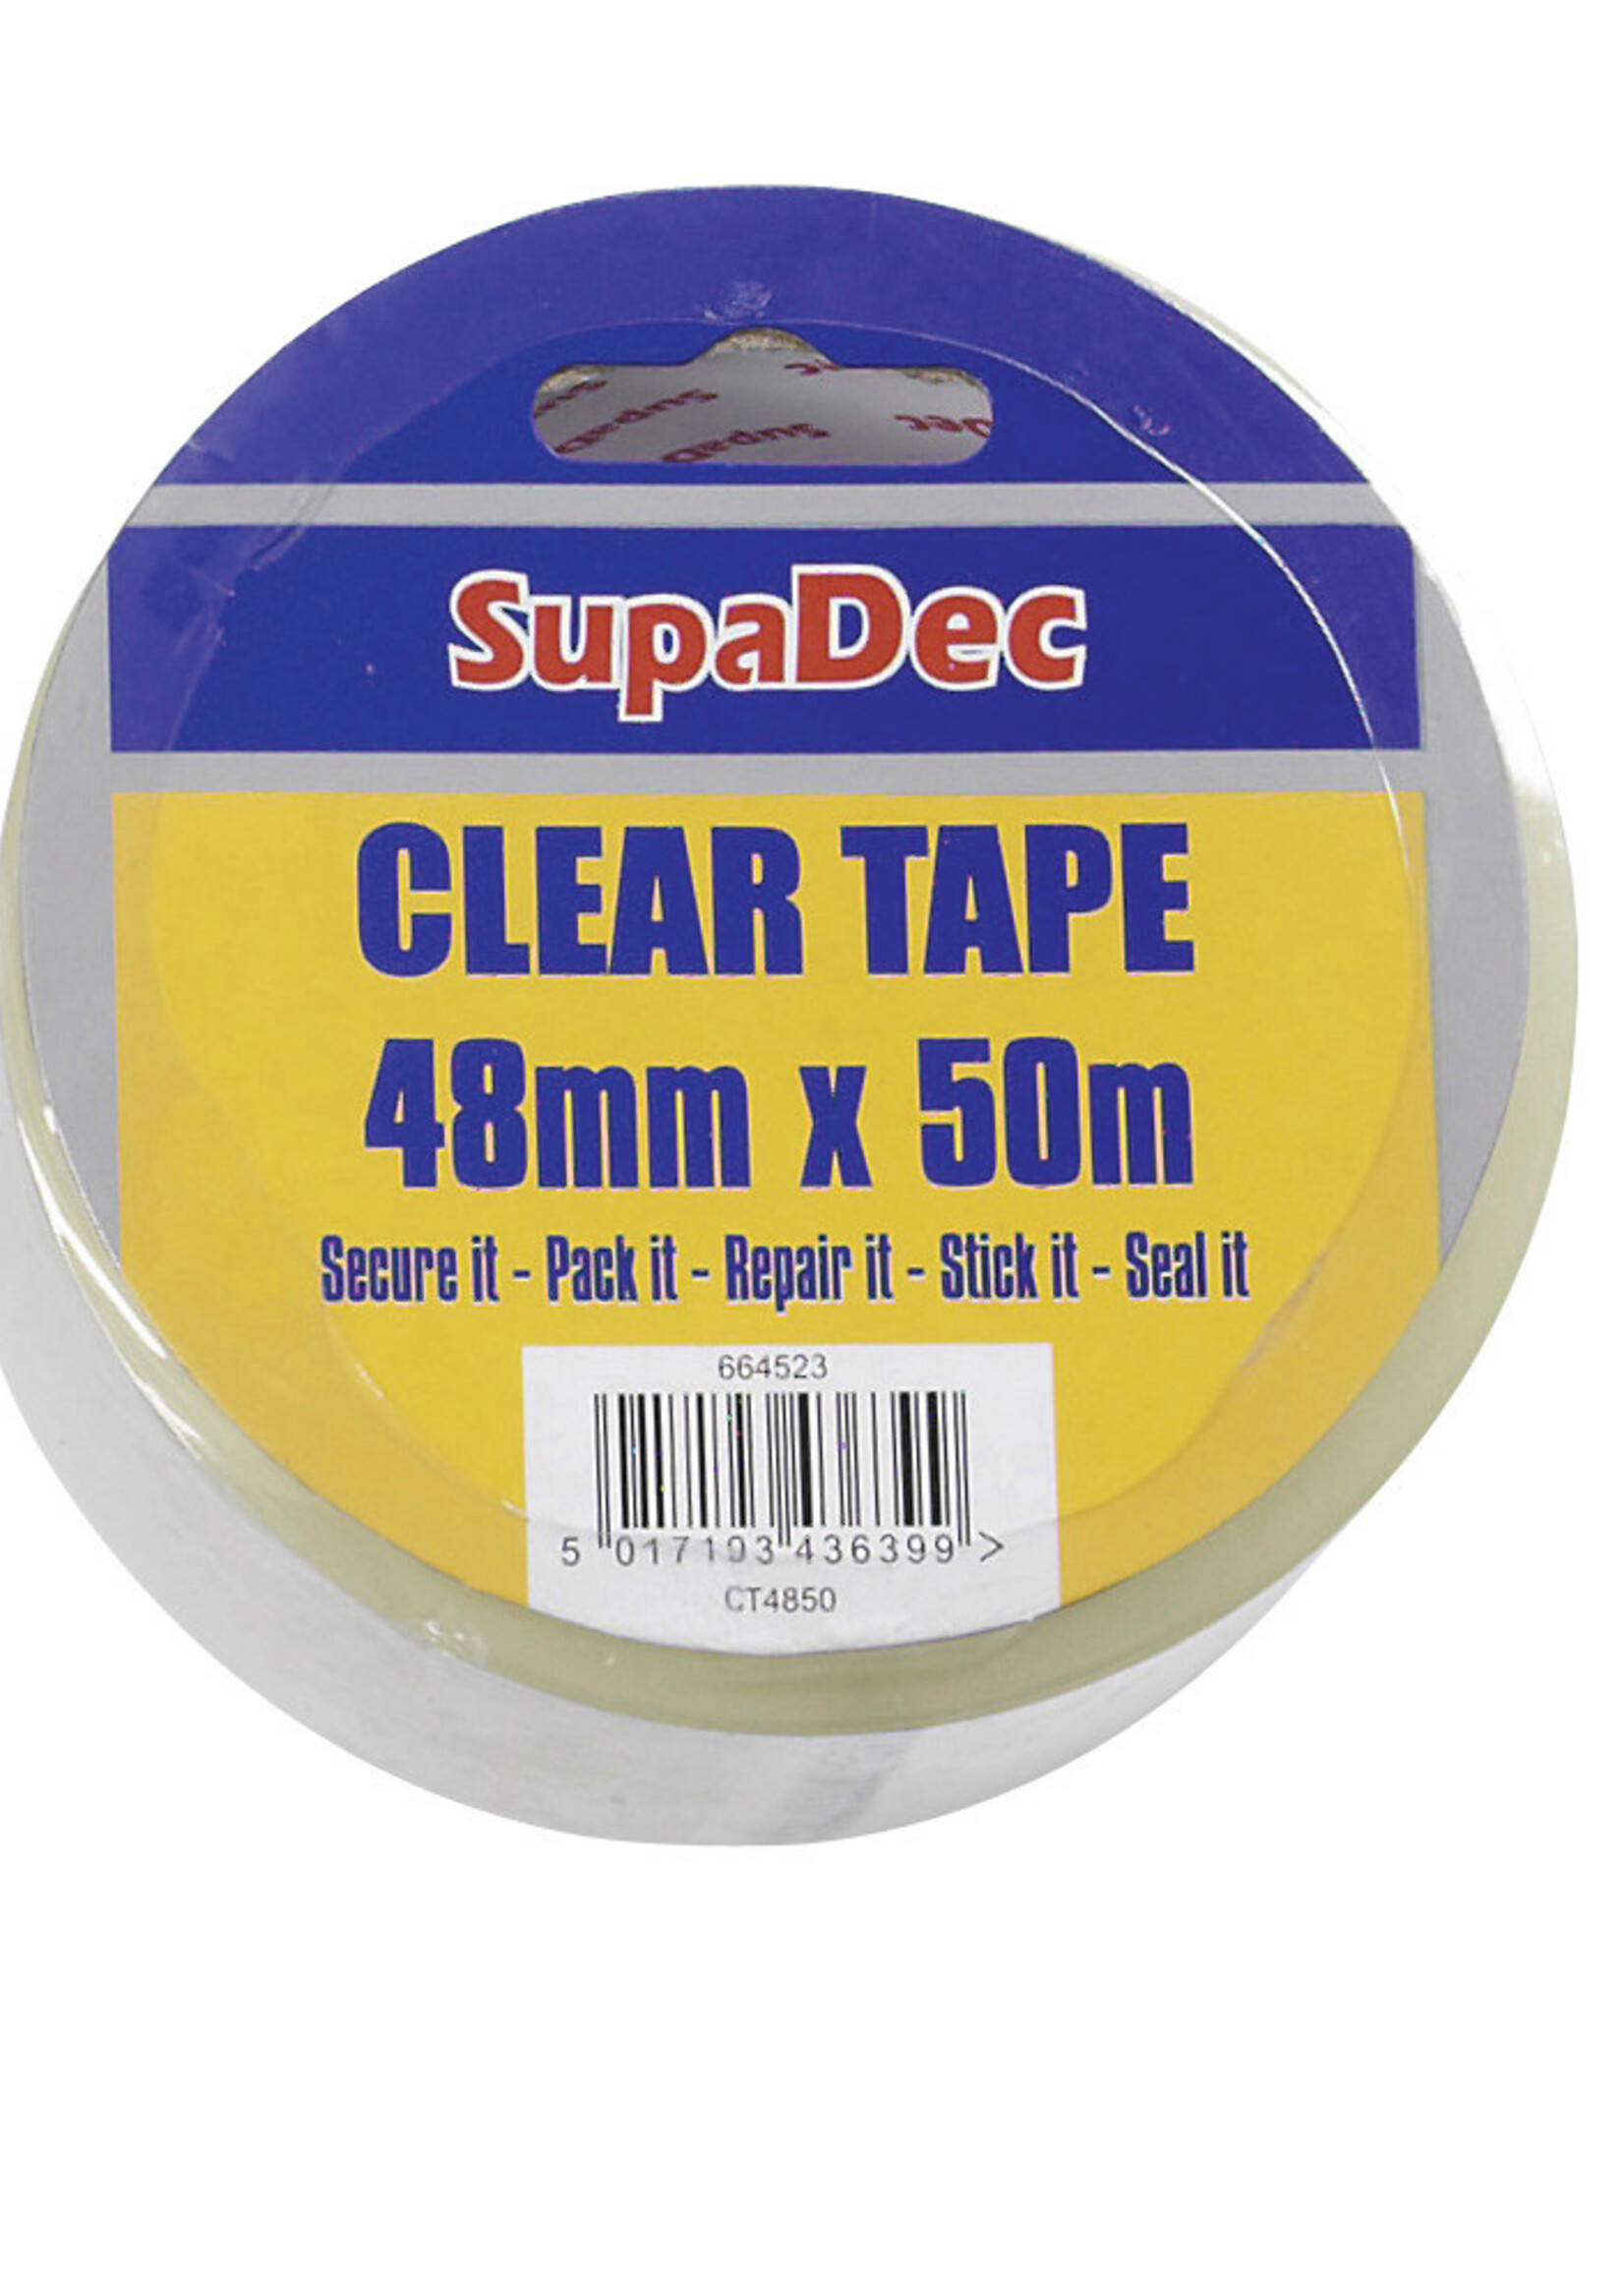 SupaDec SupaDec Clear Tape 48mm x 50m